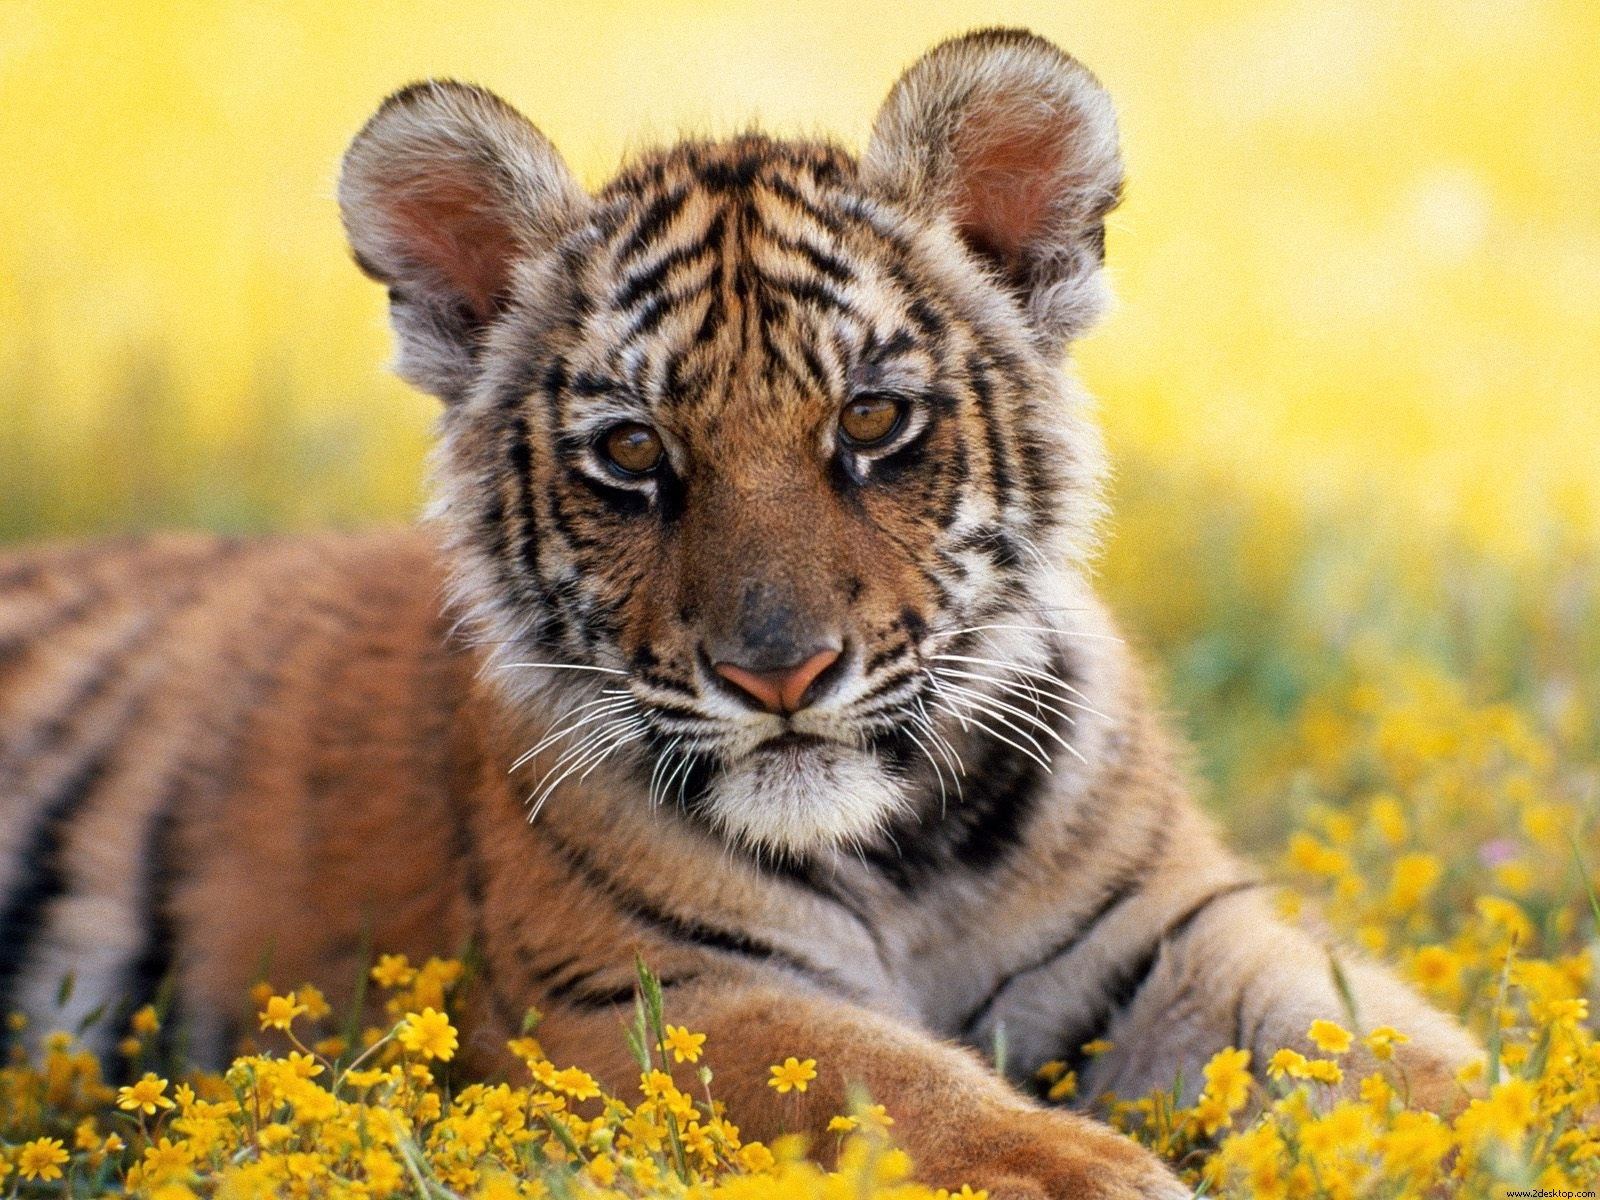 Funny Wallpapers|Hd Wallpapers: Tiger Cub Wallpaper